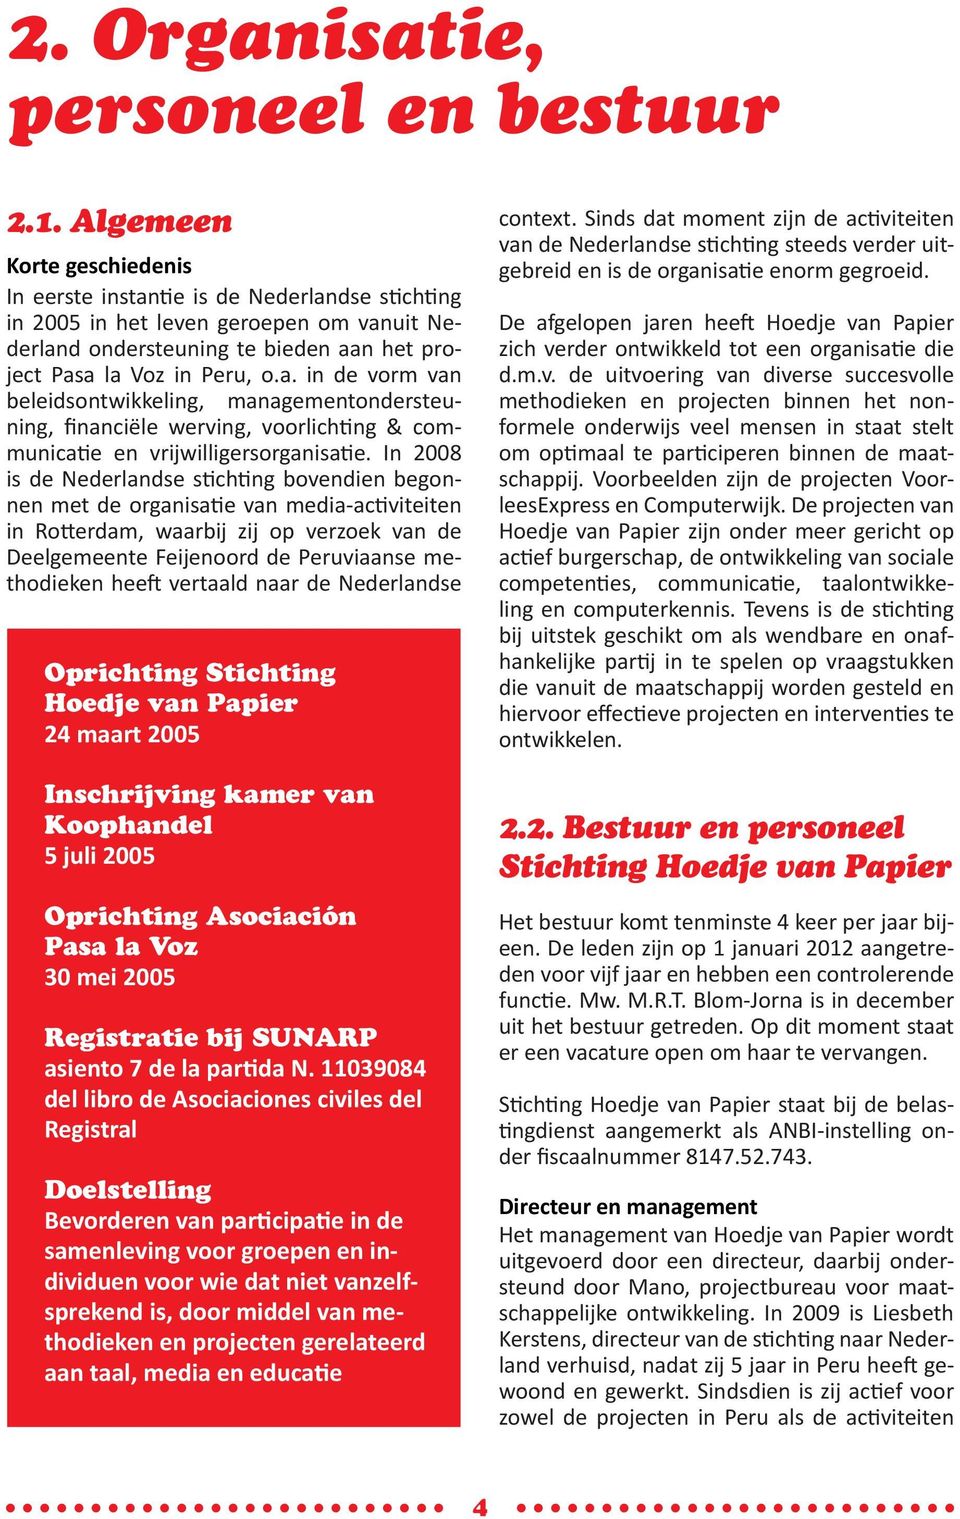 In 2008 is de Nederlandse stichting bovendien begonnen met de organisatie van media-activiteiten in Rotterdam, waarbij zij op verzoek van de Deelgemeente Feijenoord de Peruviaanse methodieken heeft